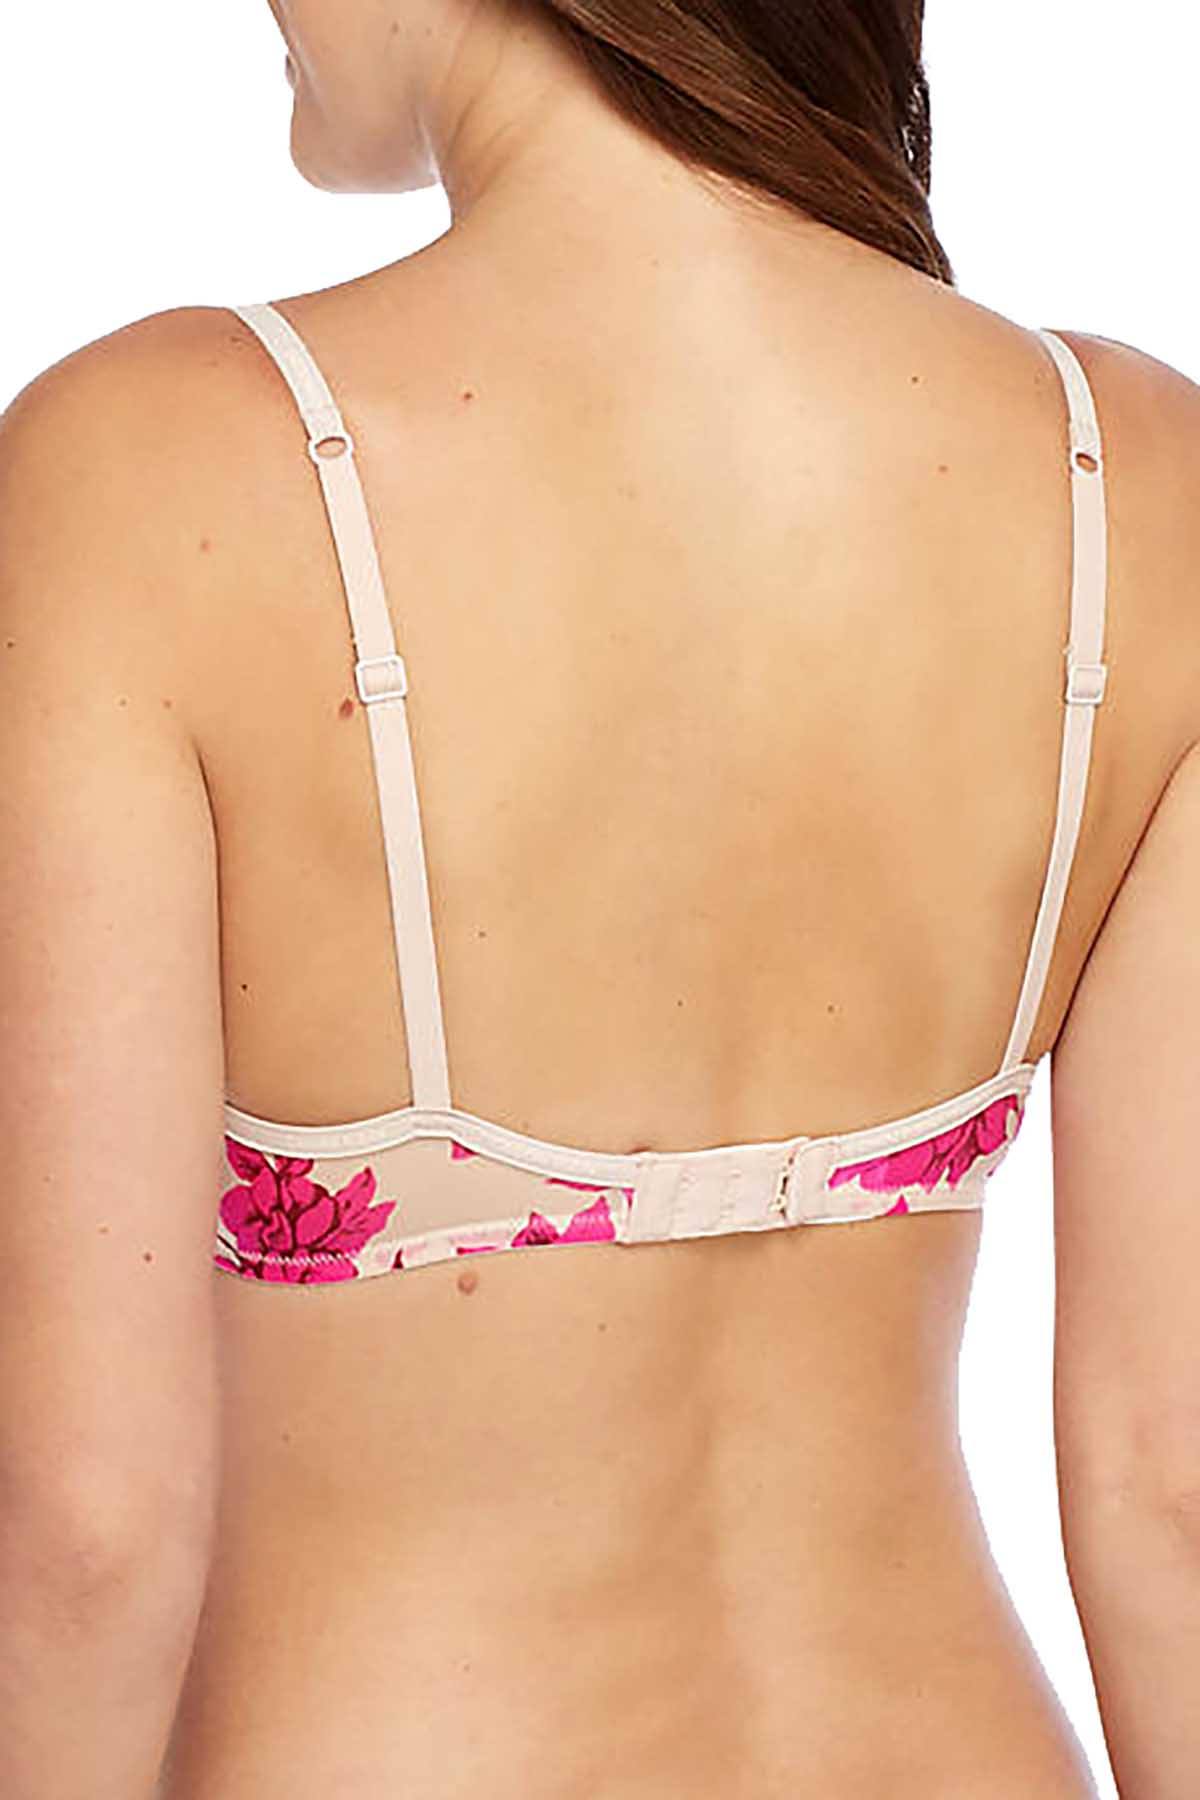 Calvin Klein, Intimates & Sleepwear, Calvin Klein Sheer Marquisette  Underwire Unlined Demi Bra Pink 32a New